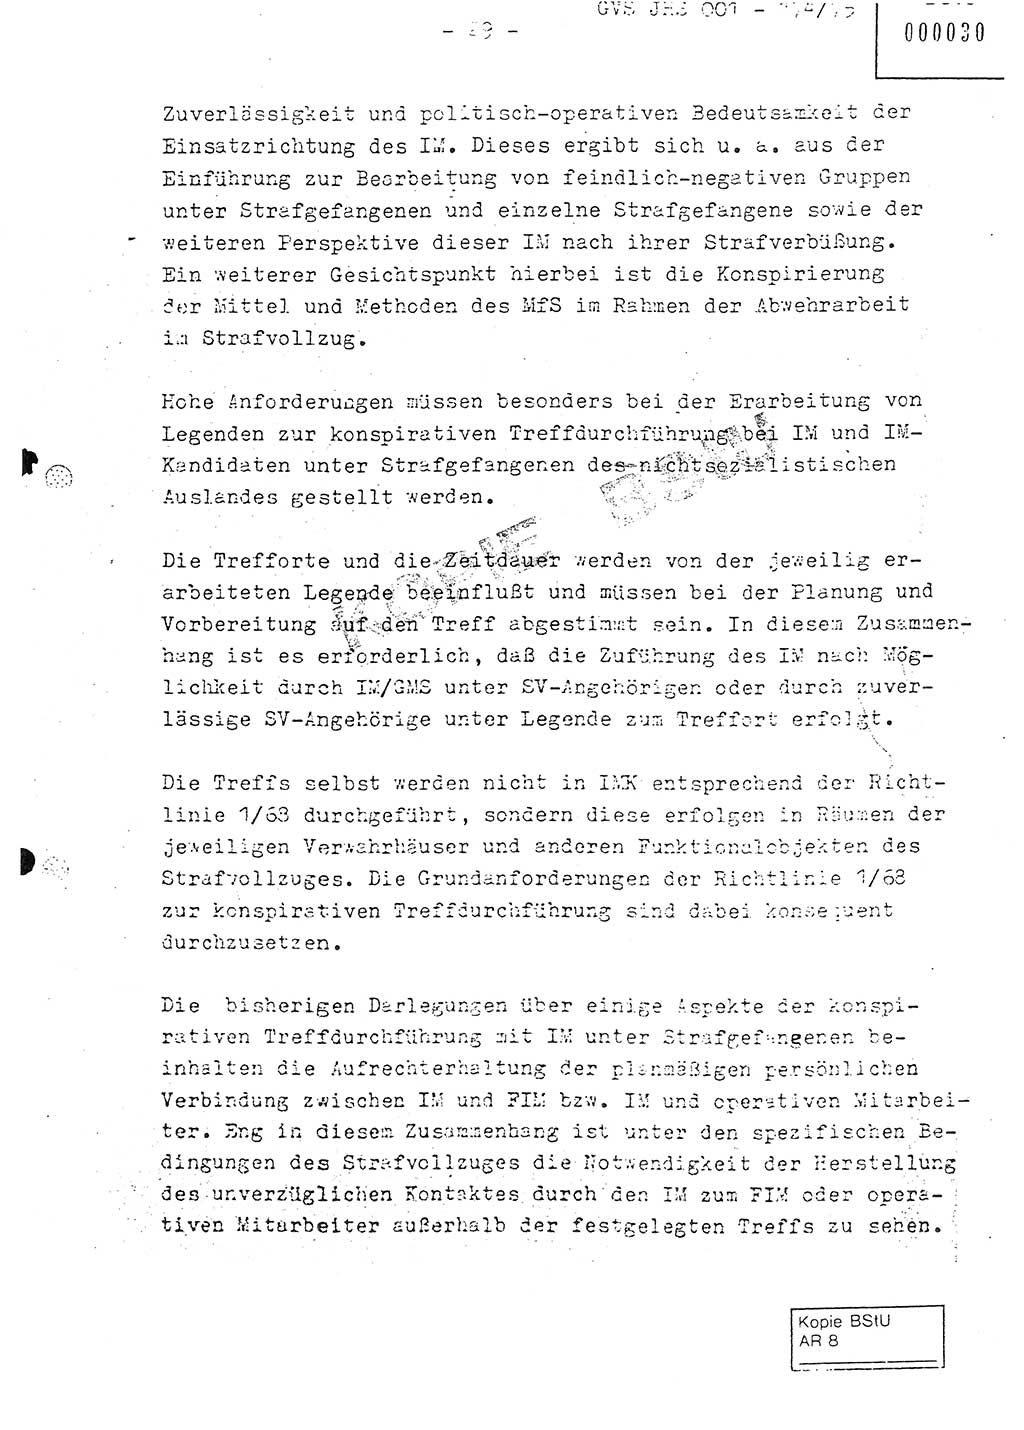 Fachschulabschlußarbeit Oberleutnant Adolf Cichon (Abt. Ⅶ), Ministerium für Staatssicherheit (MfS) [Deutsche Demokratische Republik (DDR)], Juristische Hochschule (JHS), Geheime Verschlußsache (GVS) 001-174/75, Potsdam 1976, Seite 29 (FS-Abschl.-Arb. MfS DDR JHS GVS 001-174/75 1976, S. 29)